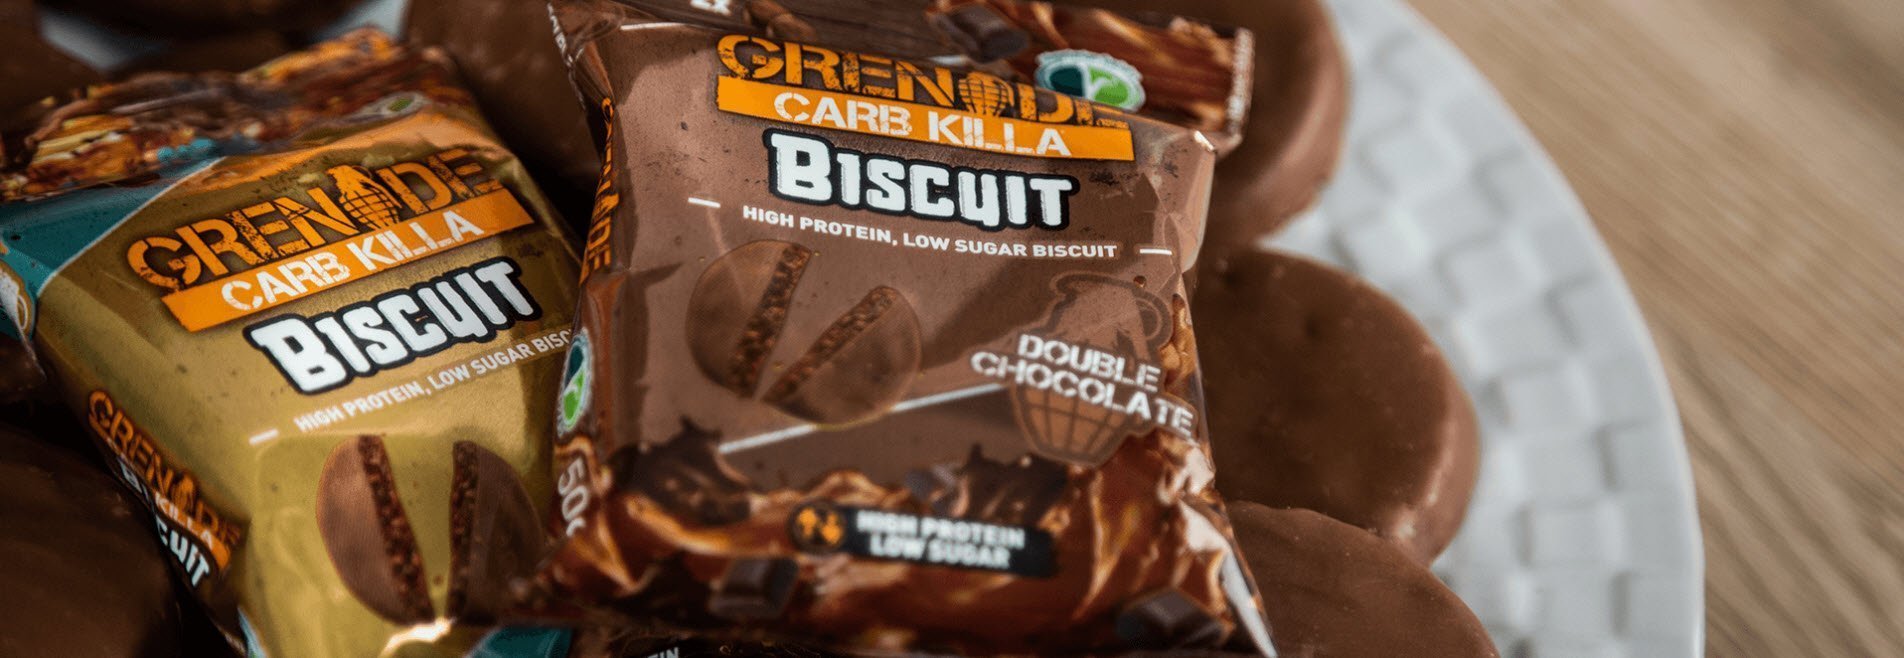 Grenade-Carb-Killa-Biscuit